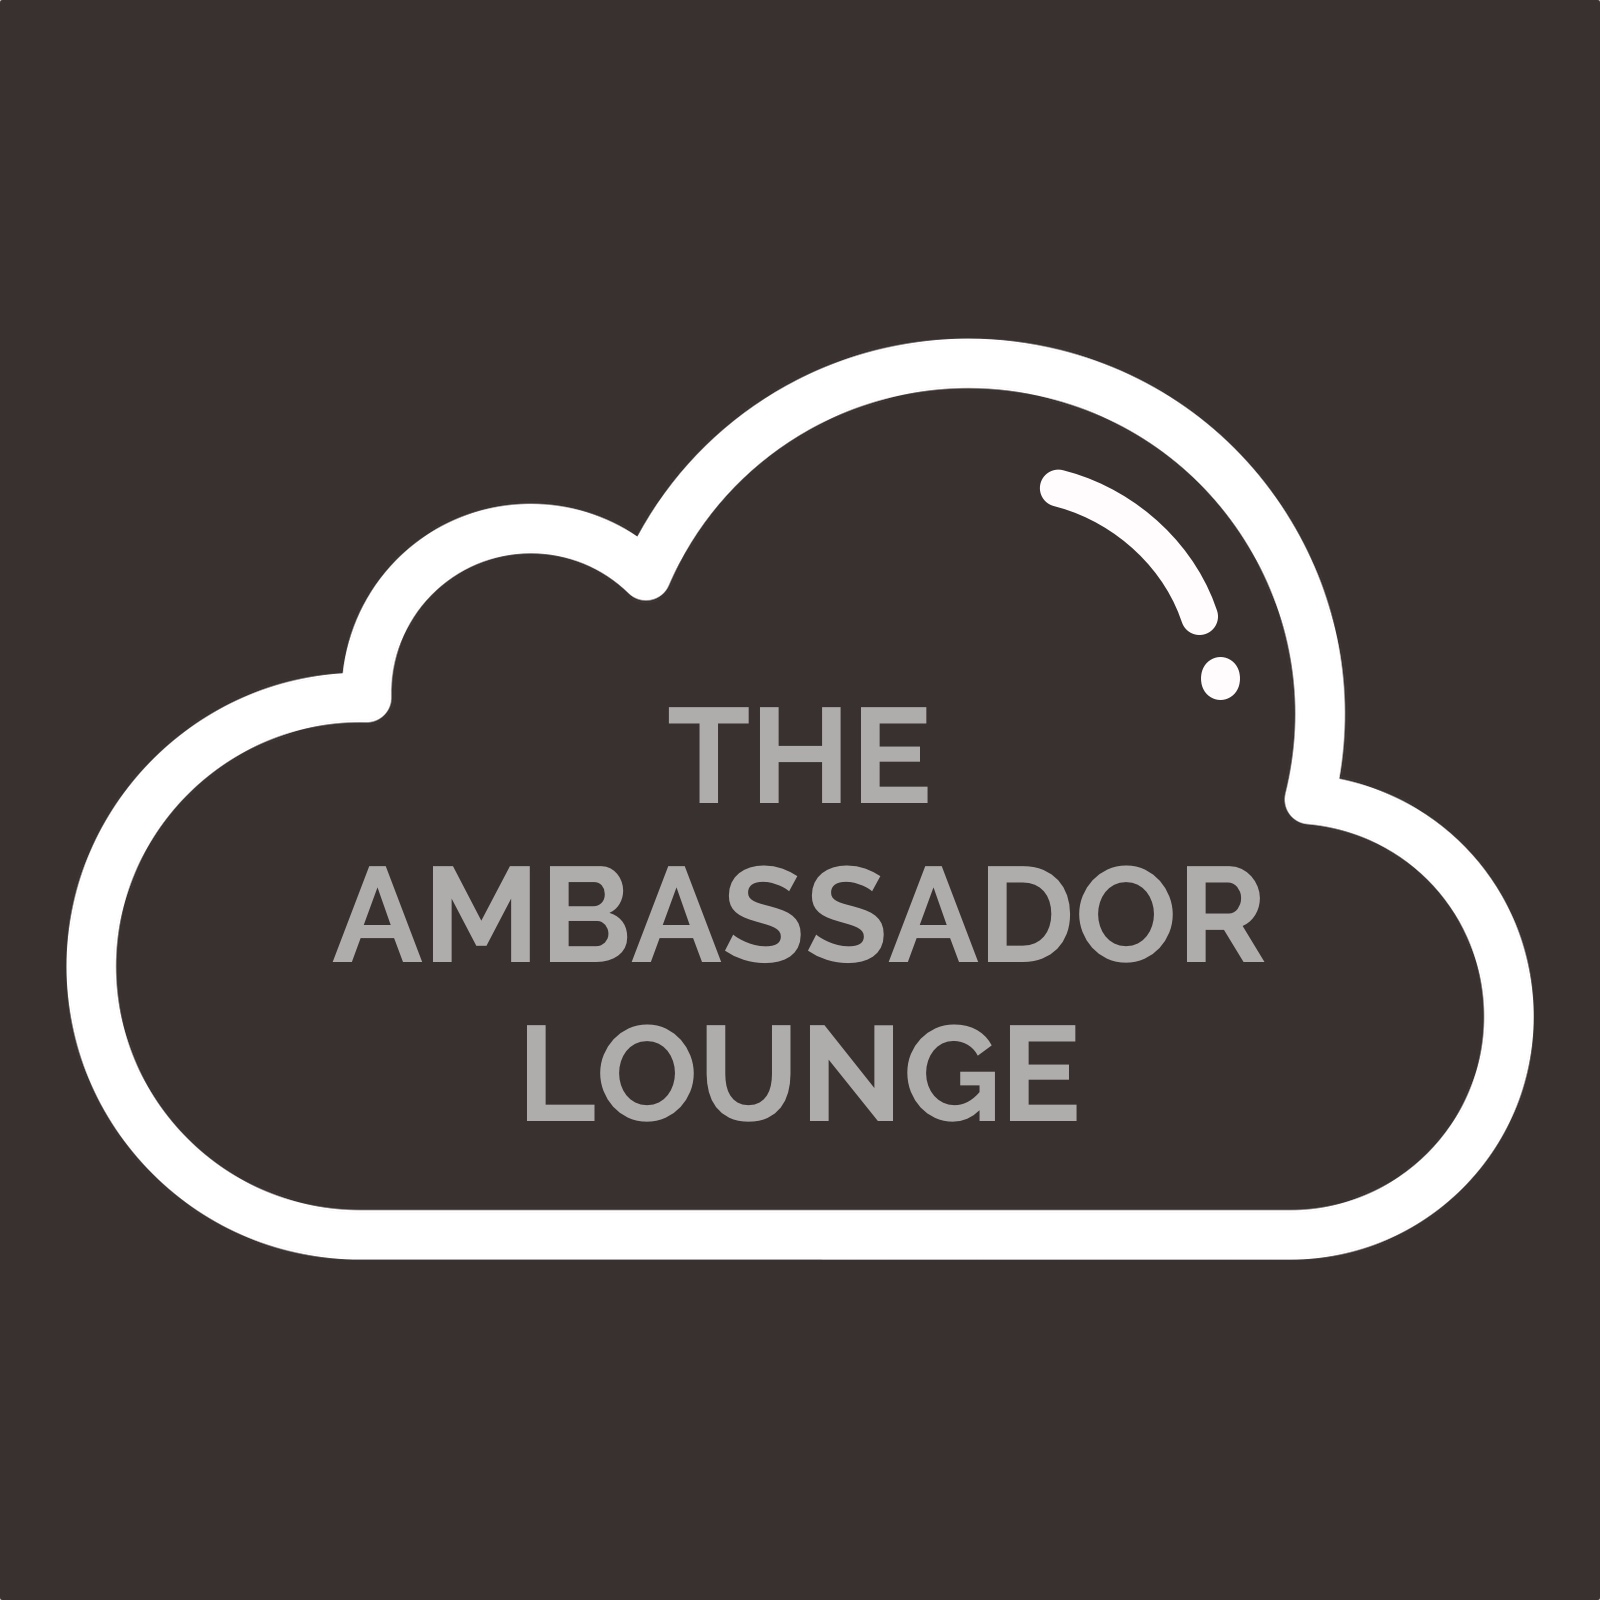 The Ambassador Lounge Podcast logo